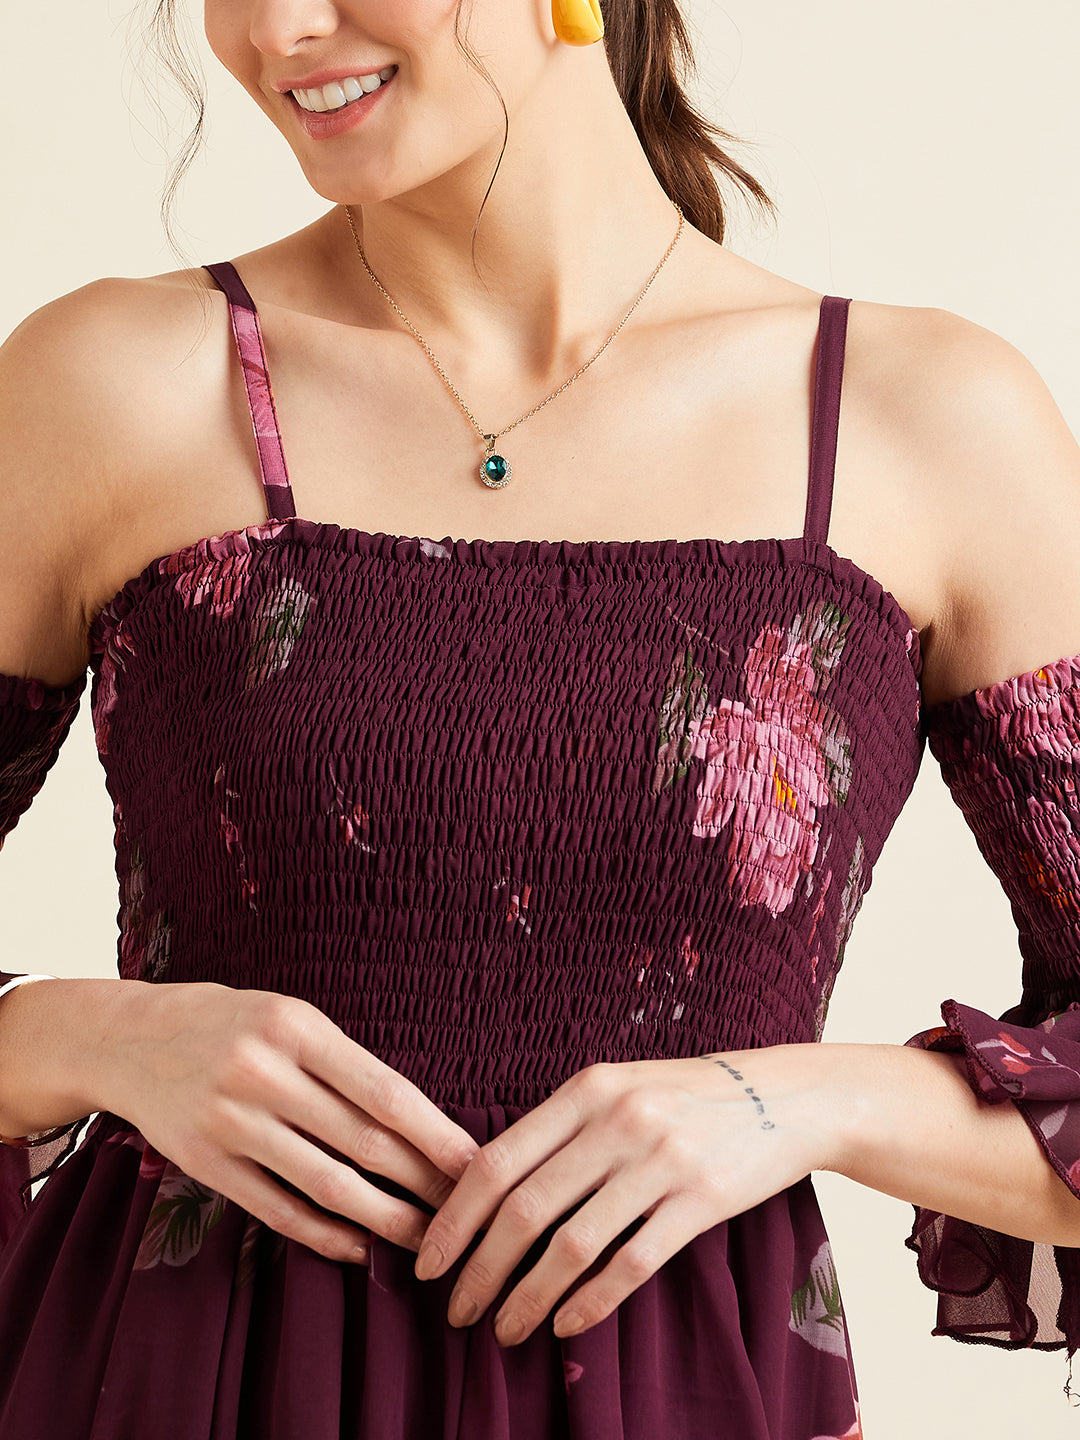 Burgundy & Pink Floral Printed Shoulder Straps Smocked Georgette Maxi Dress